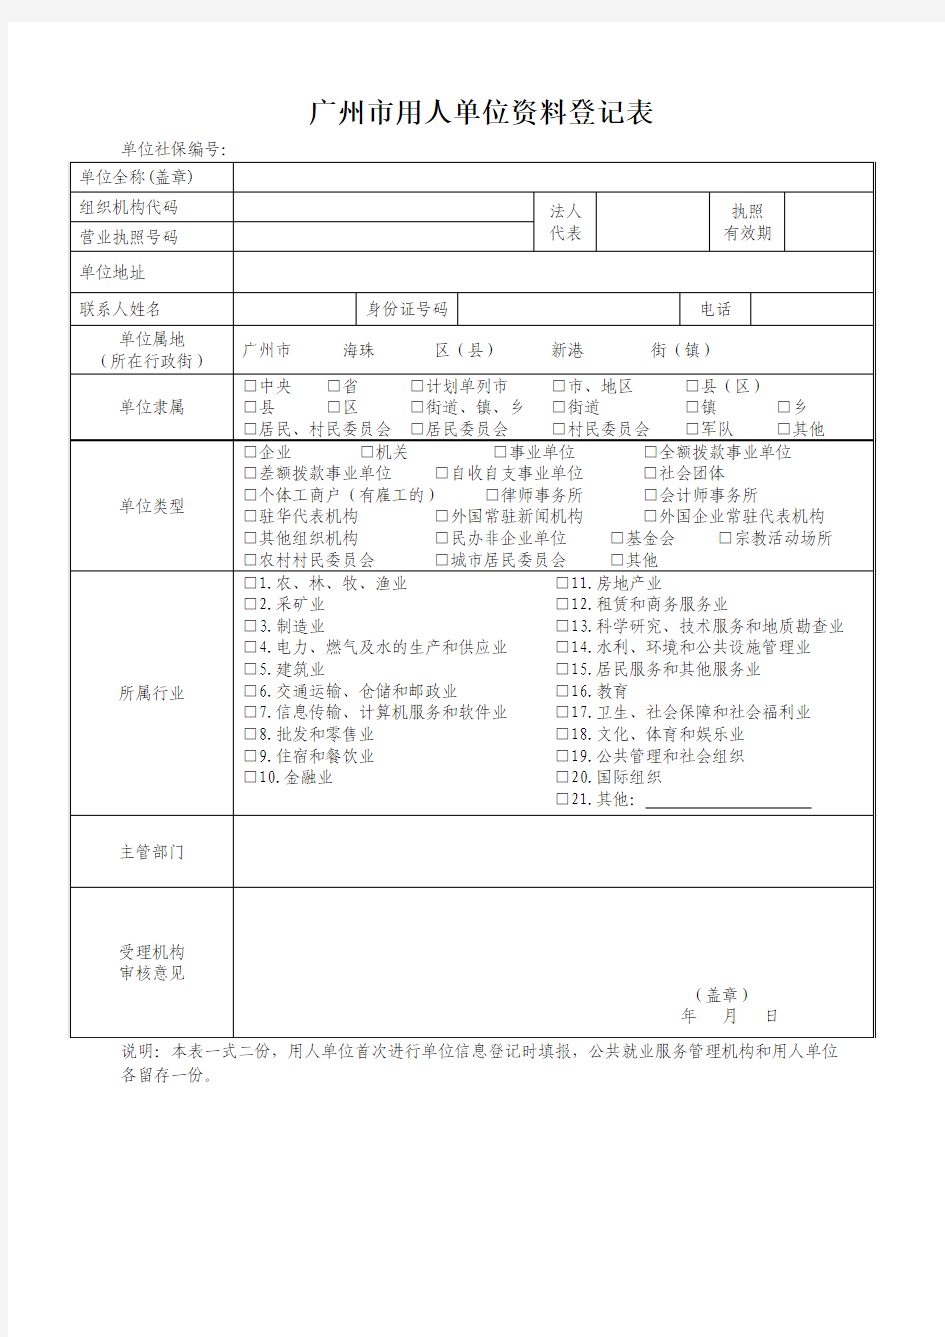 广州市用人单位资料登记表(劳动备案)